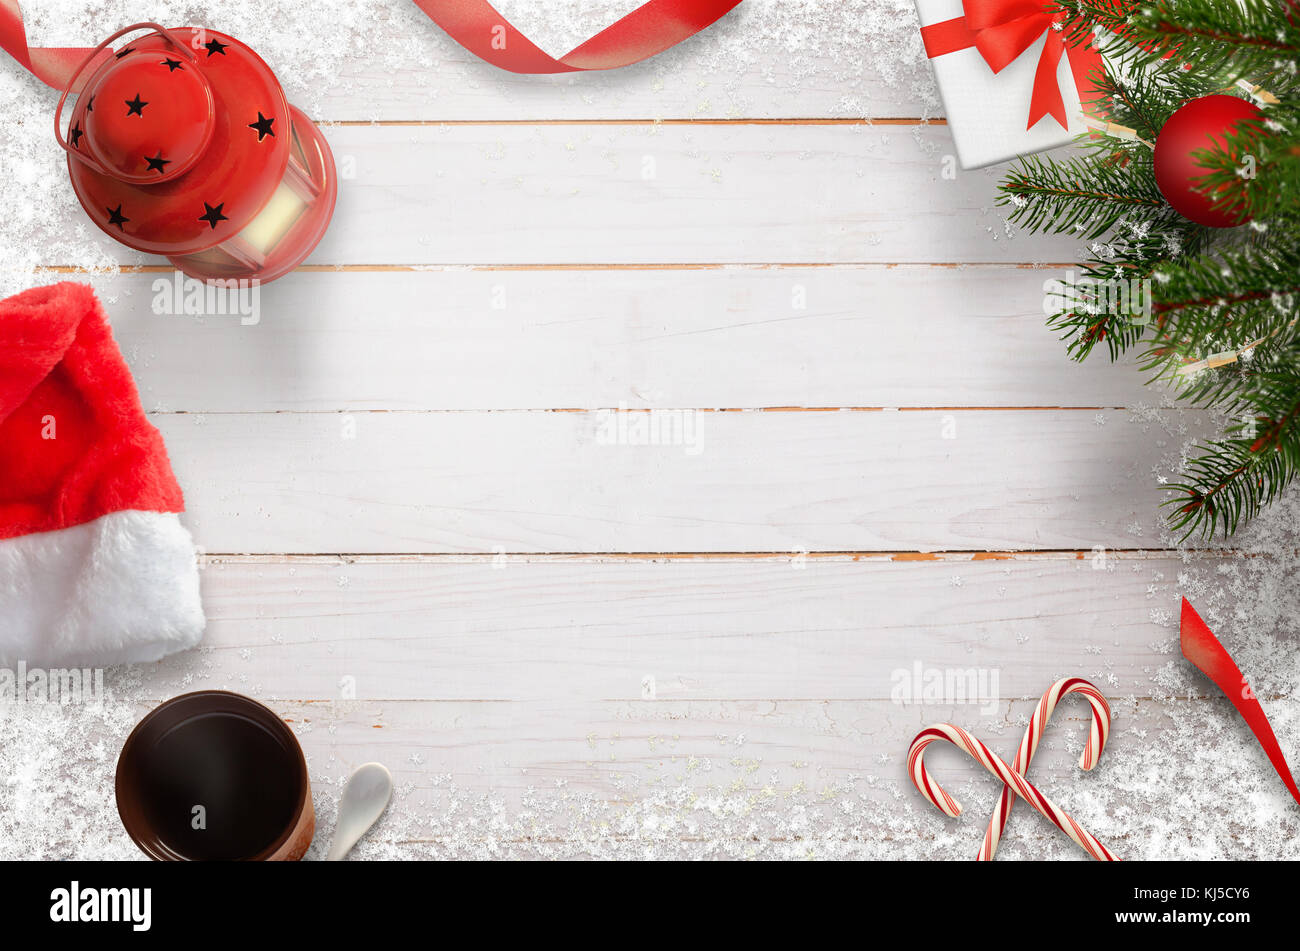 Composición de Navidad árbol de navidad, decoraciones, luces; los copos de nieve; don, linterna, lollipop, té, sombrero blanco de mesa de madera. Vista desde arriba. Foto de stock